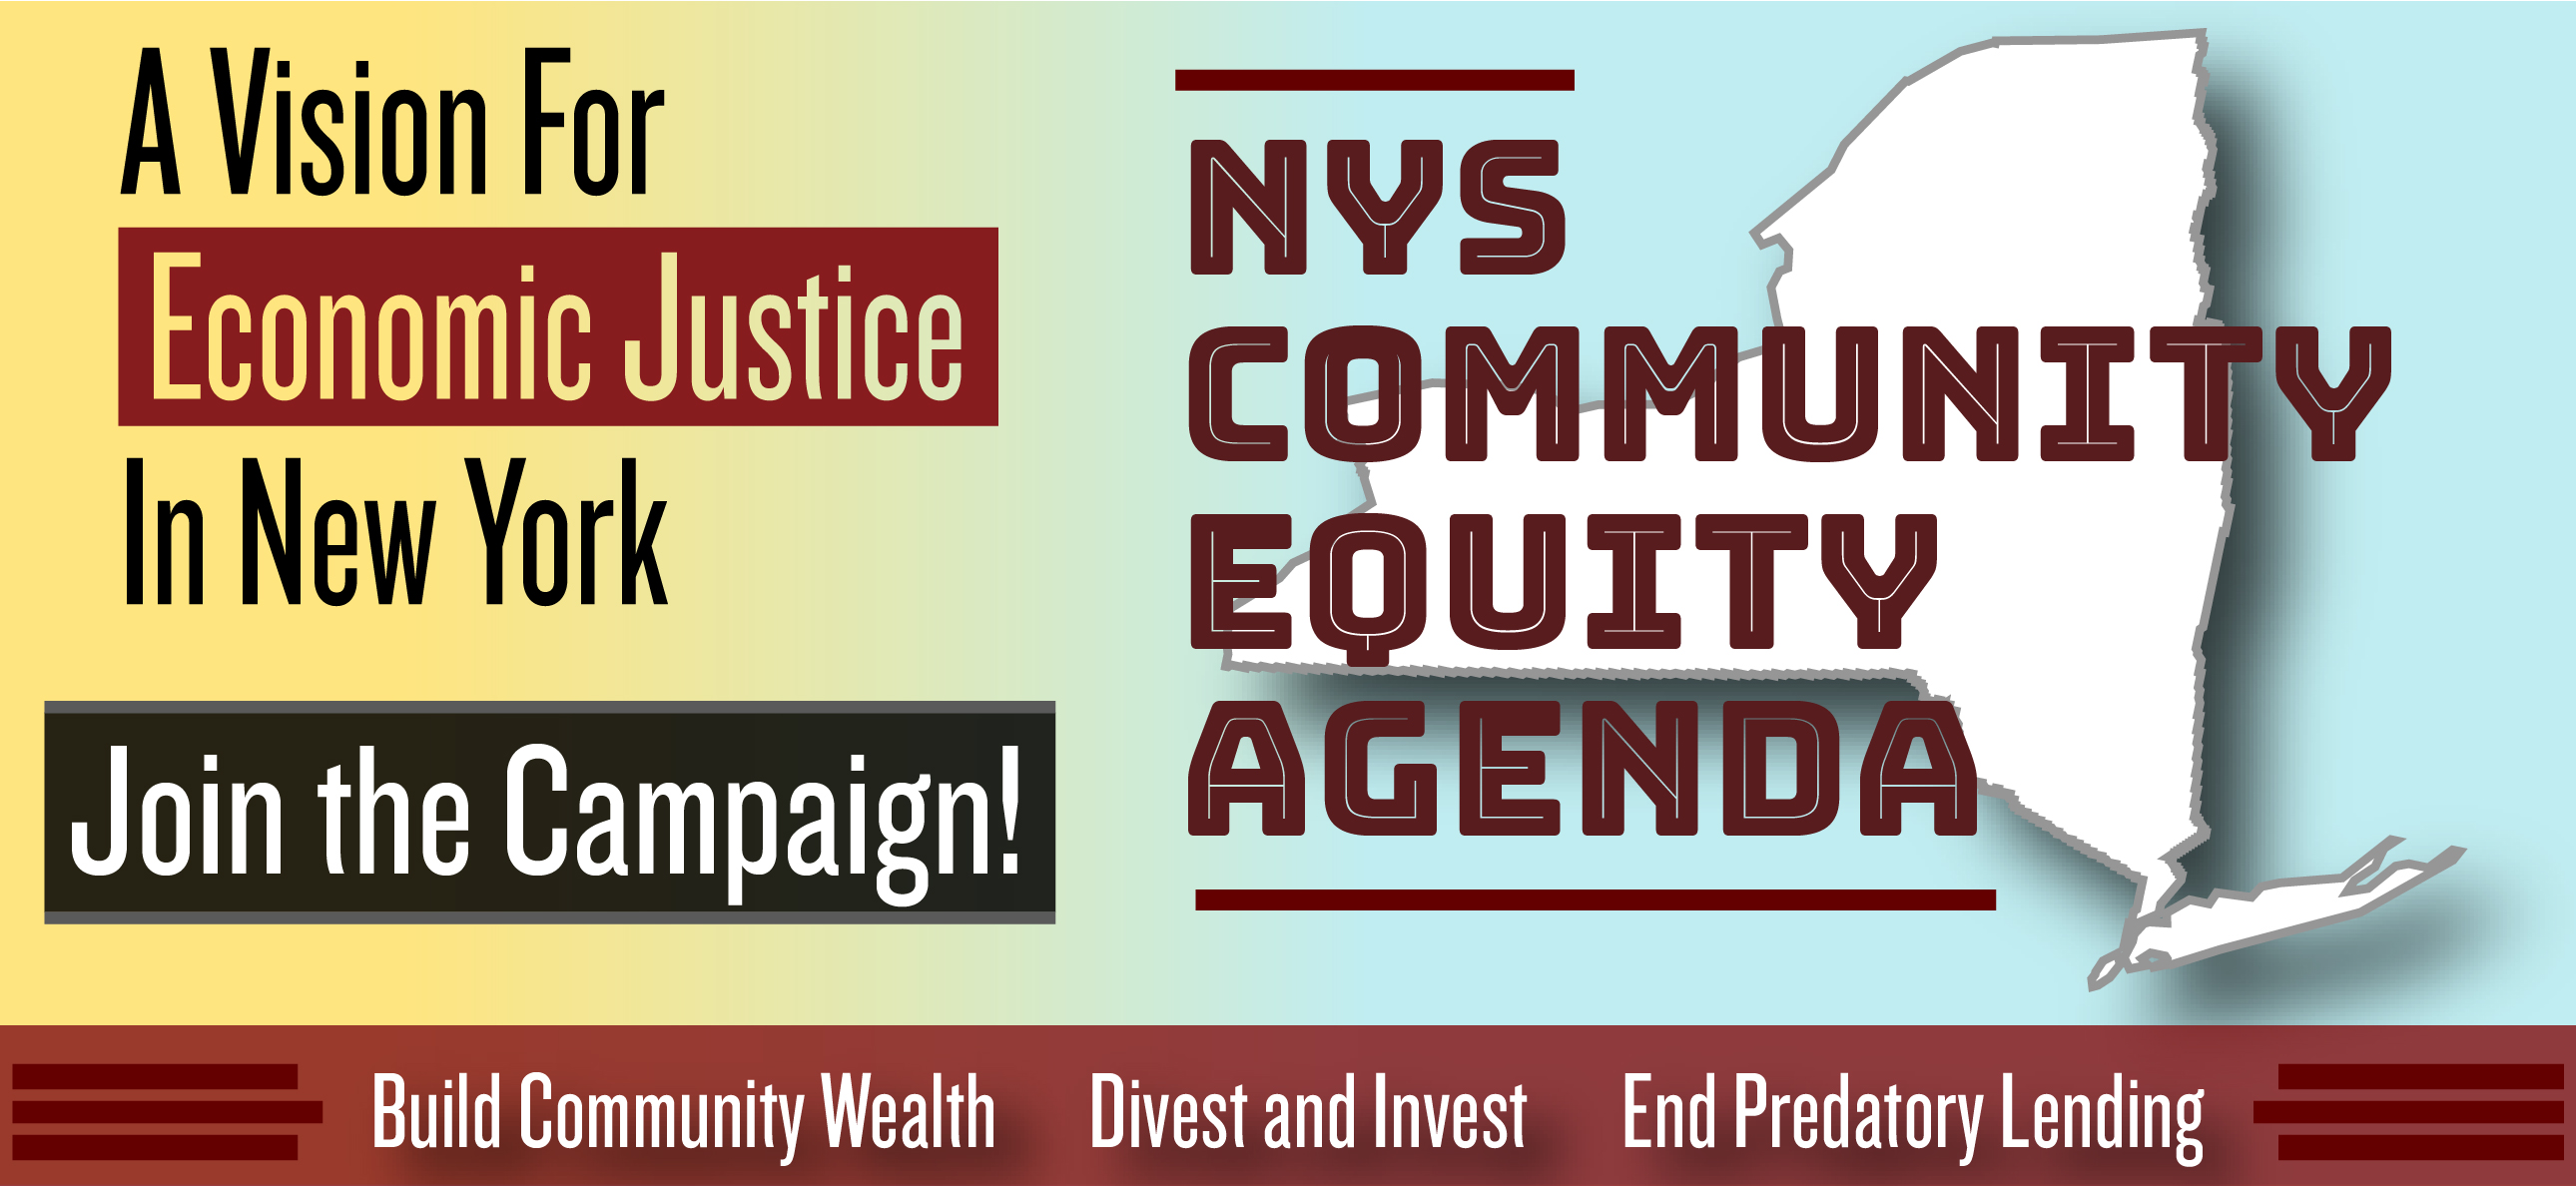 NY Community Equity Agenda